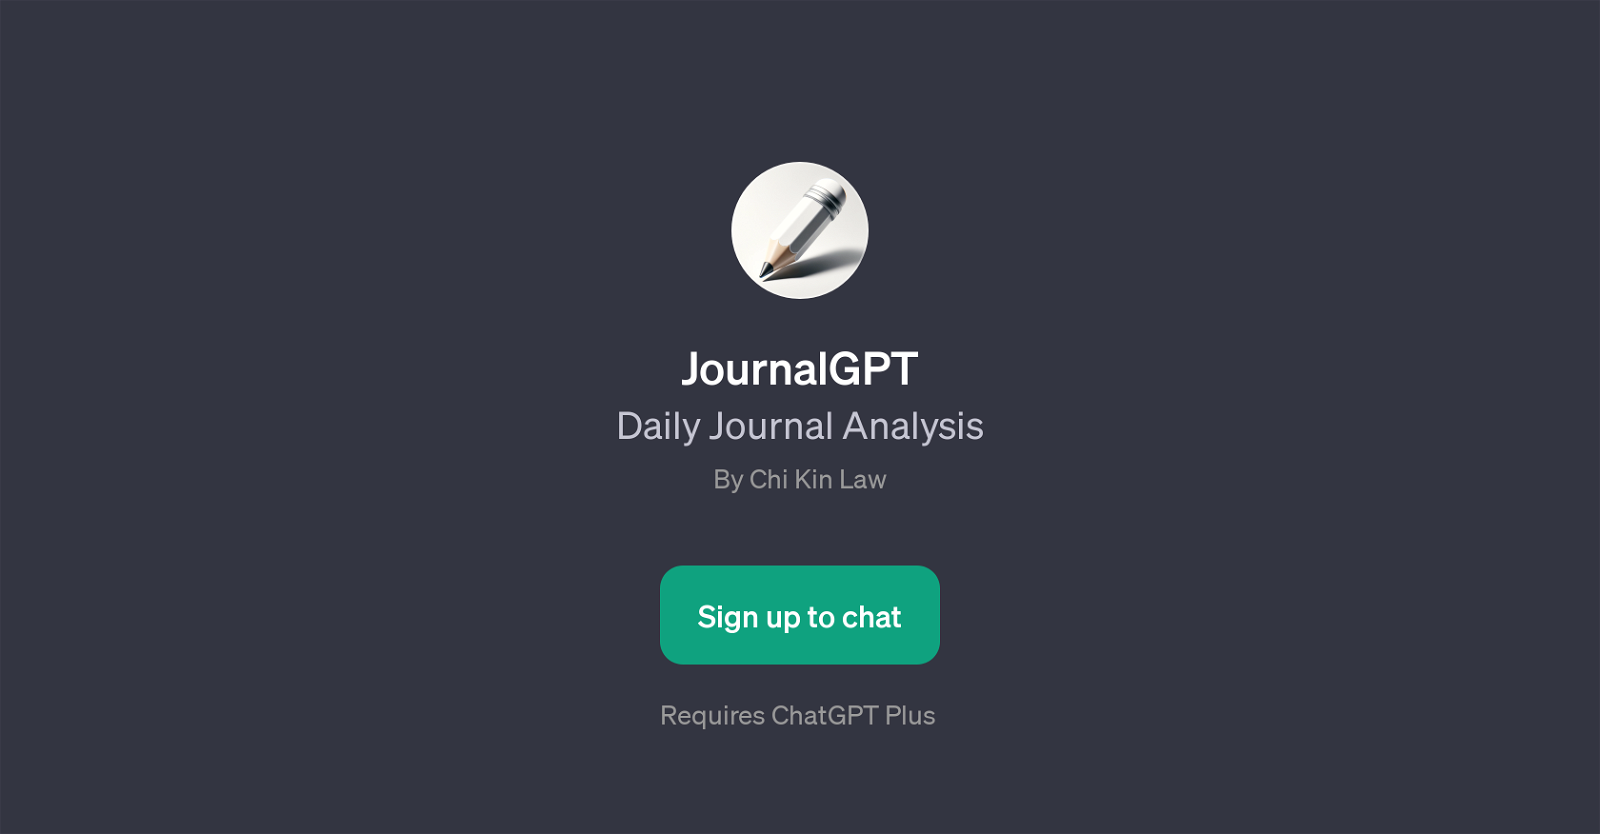 JournalGPT website